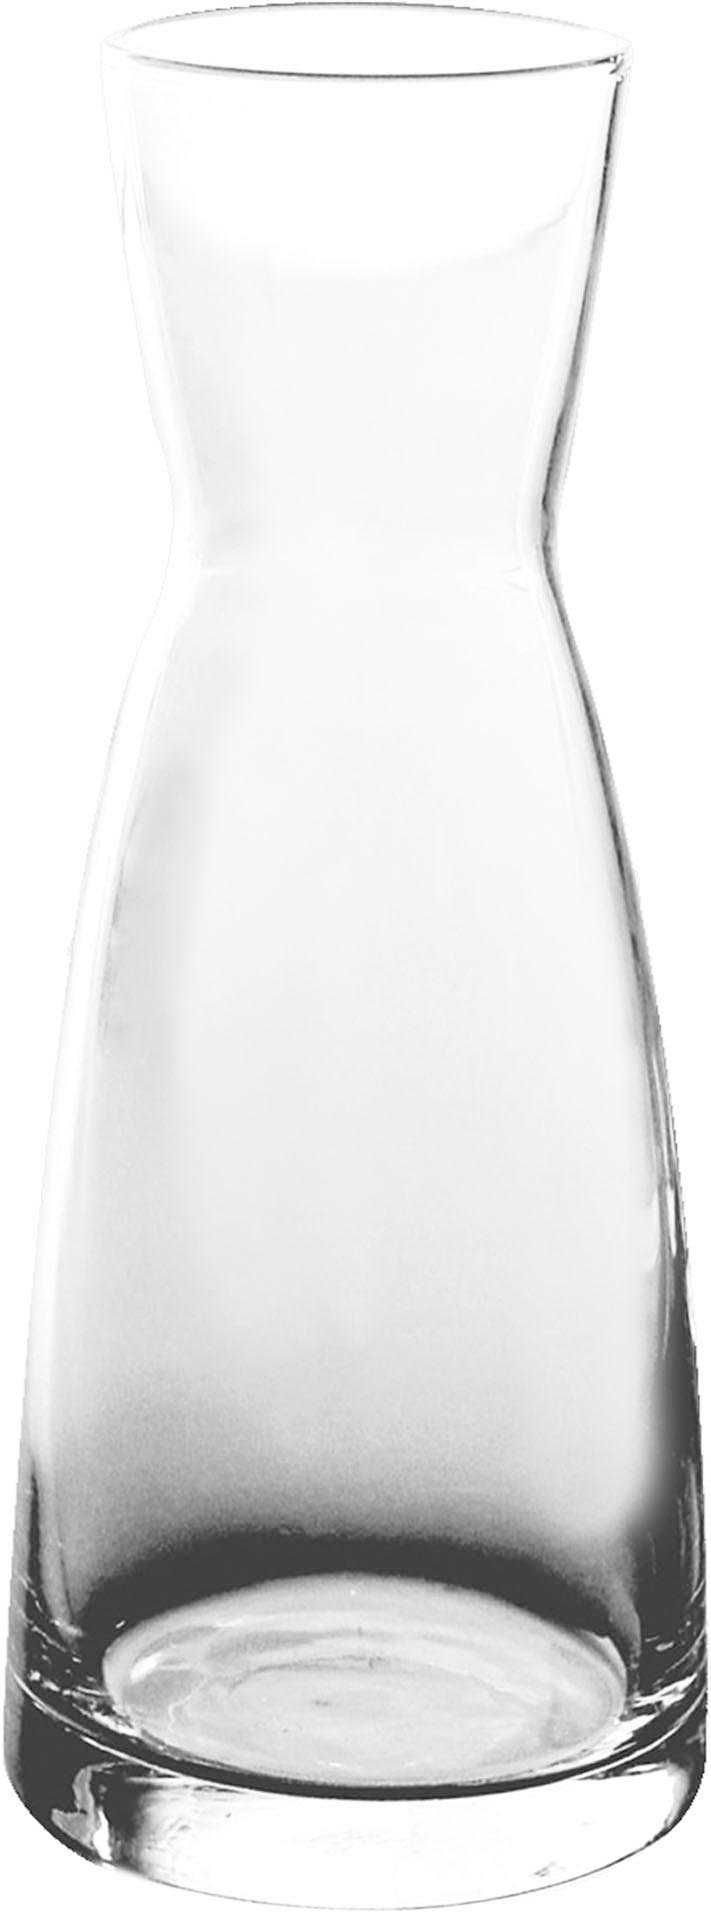 Karaffe "Ypsilon" /-/ 0,5L  Glas VPE 6 S.113 geeicht 0,5L  H:20cm Øoben 5,5cm Øunten